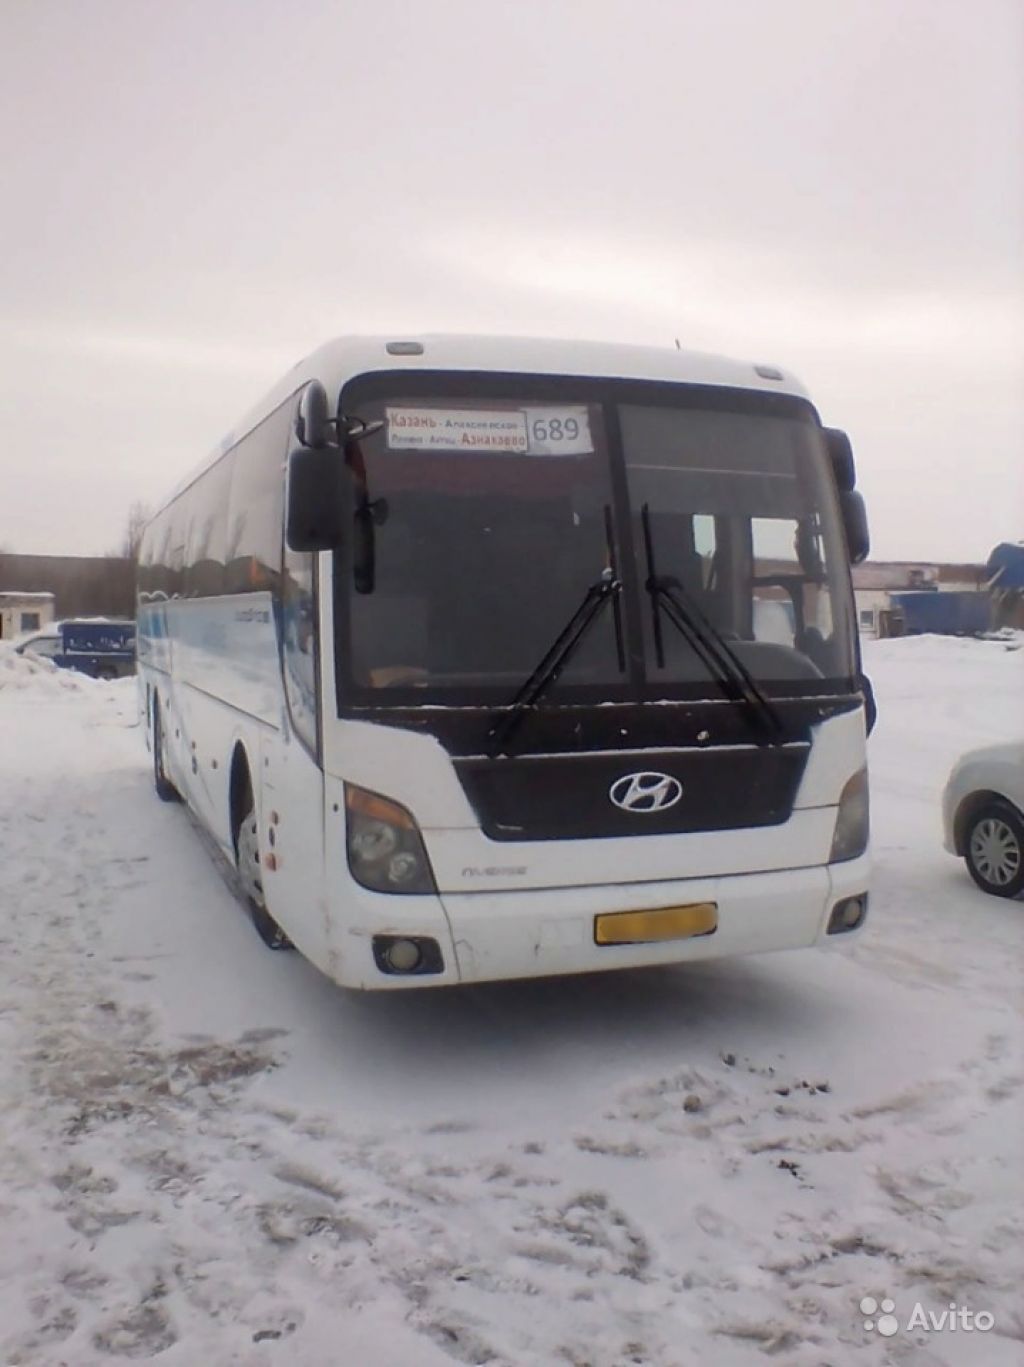 Автобус Hyundai Universe 2012 года выпуска в Москве. Фото 1